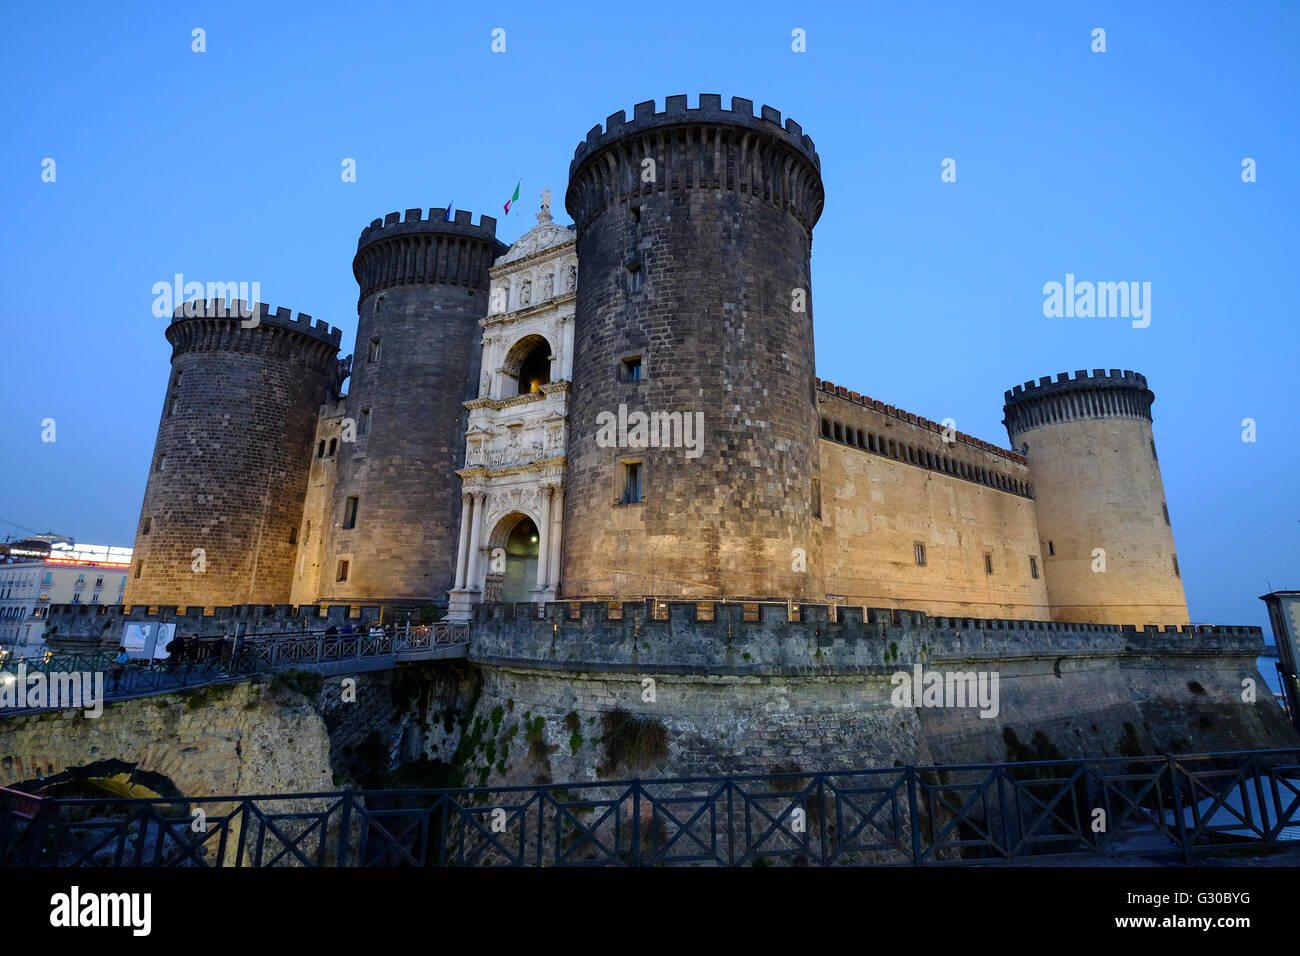 Le Castel Nuovo (Maschio Angioino), un château médiéval situé en face de la Piazza Municipio, Naples, Campanie, Italie, Europe Banque D'Images